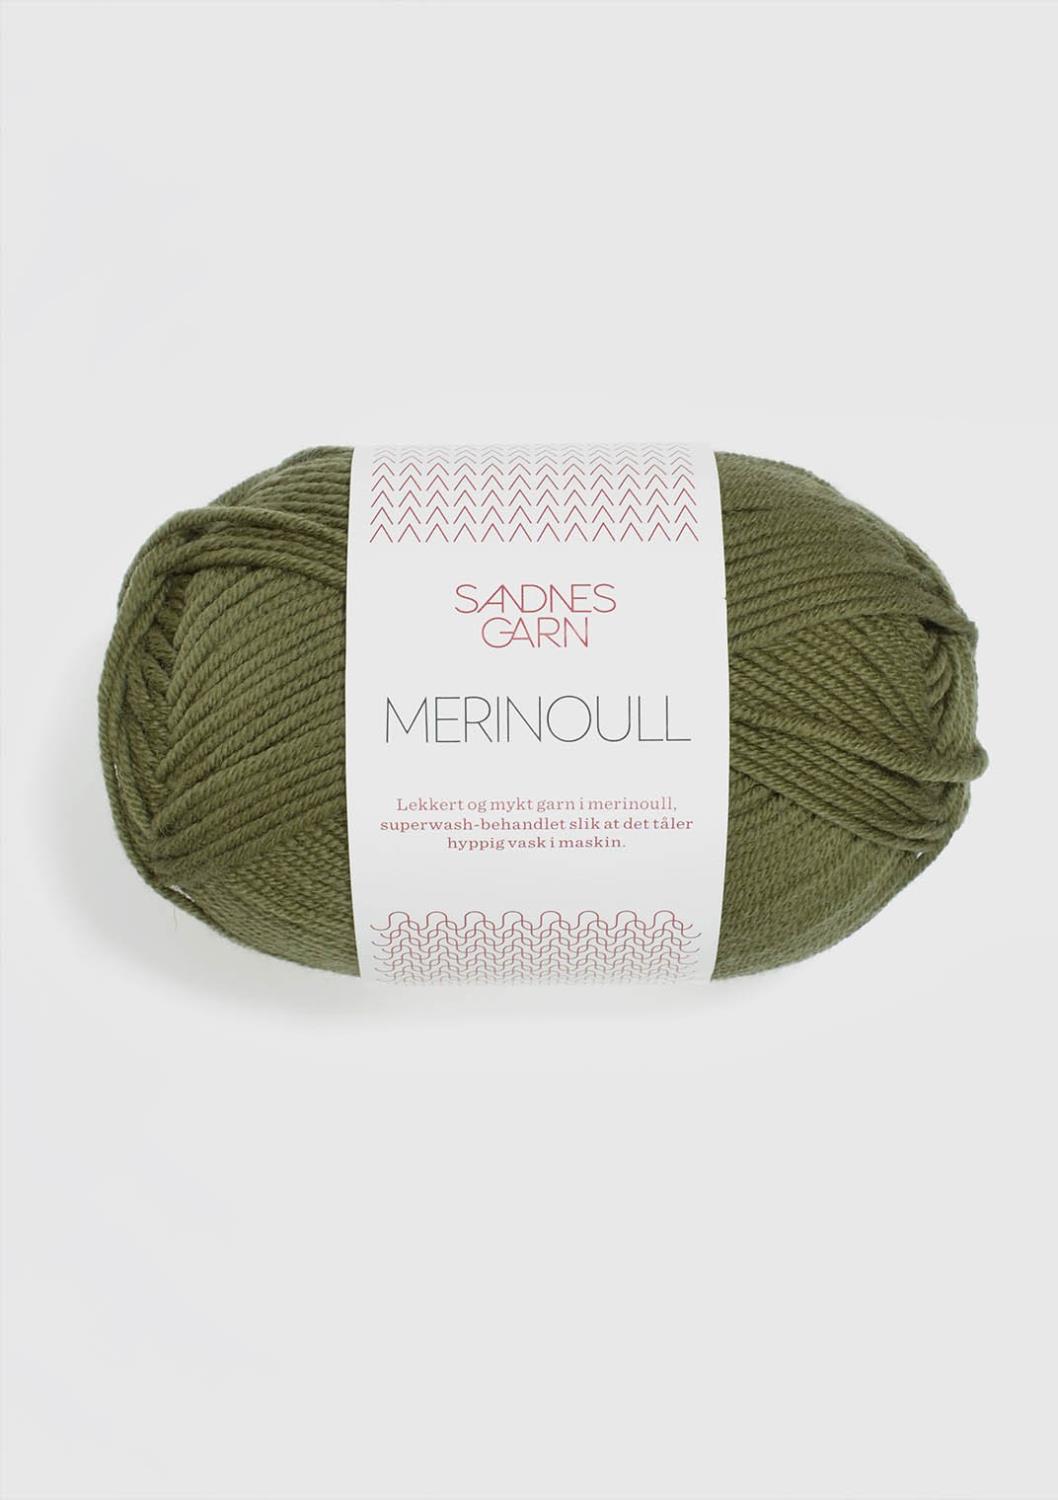 Merinoull Sandnes 9364 - Olivengrønn